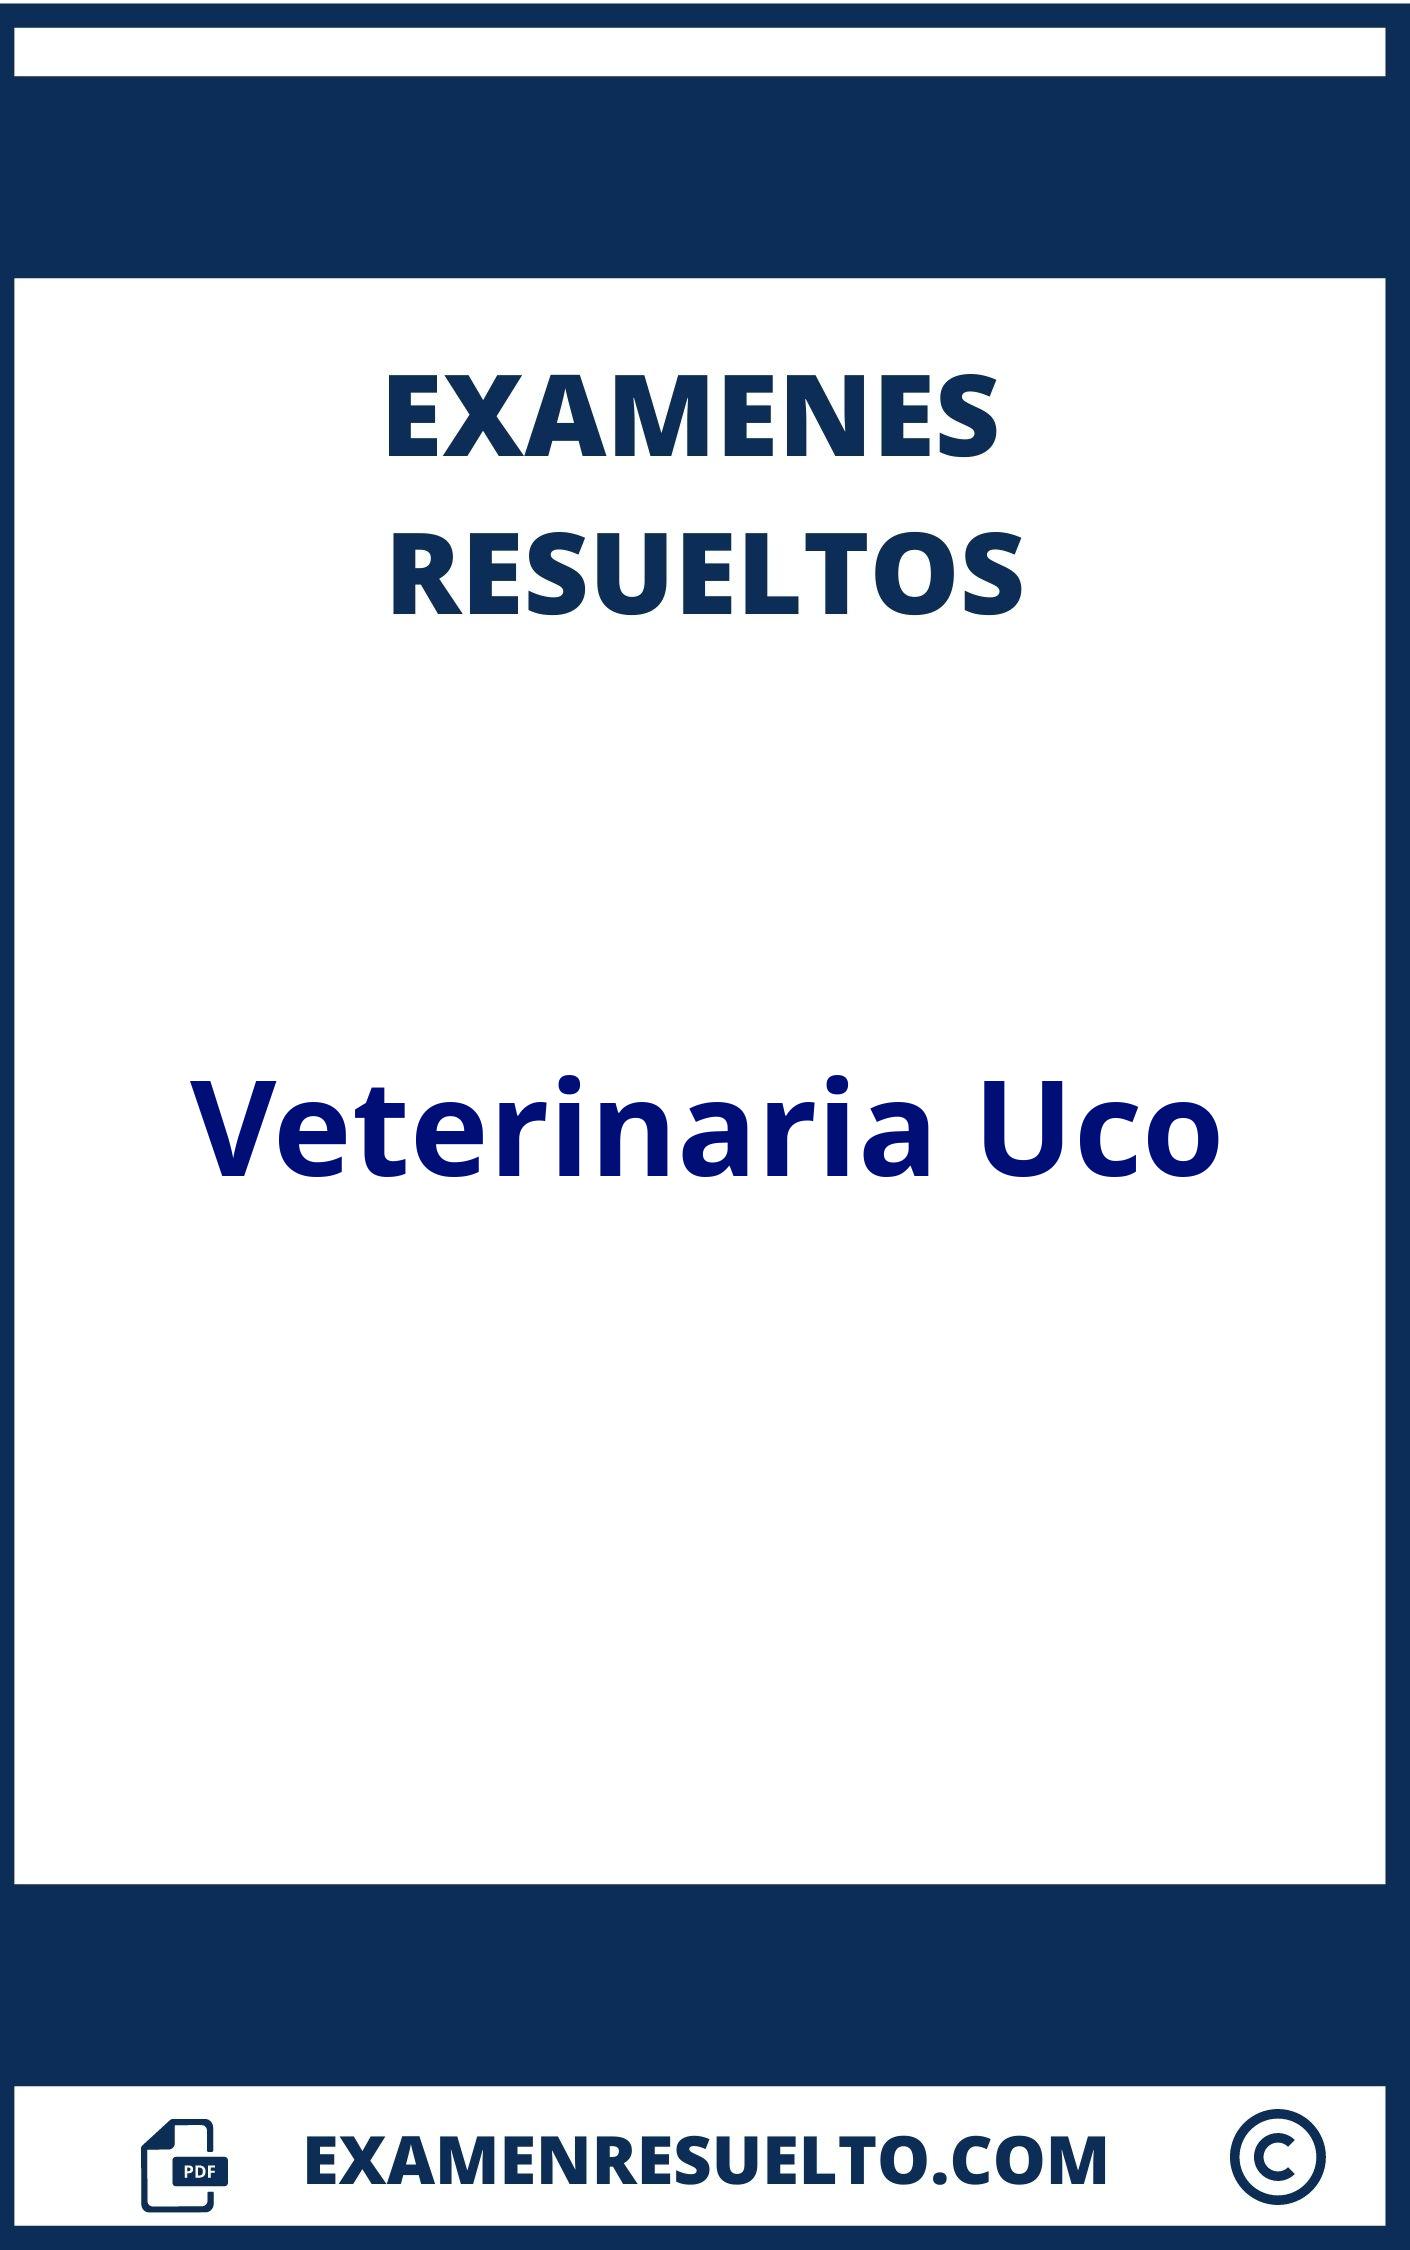 Examenes Veterinaria Uco Resueltos